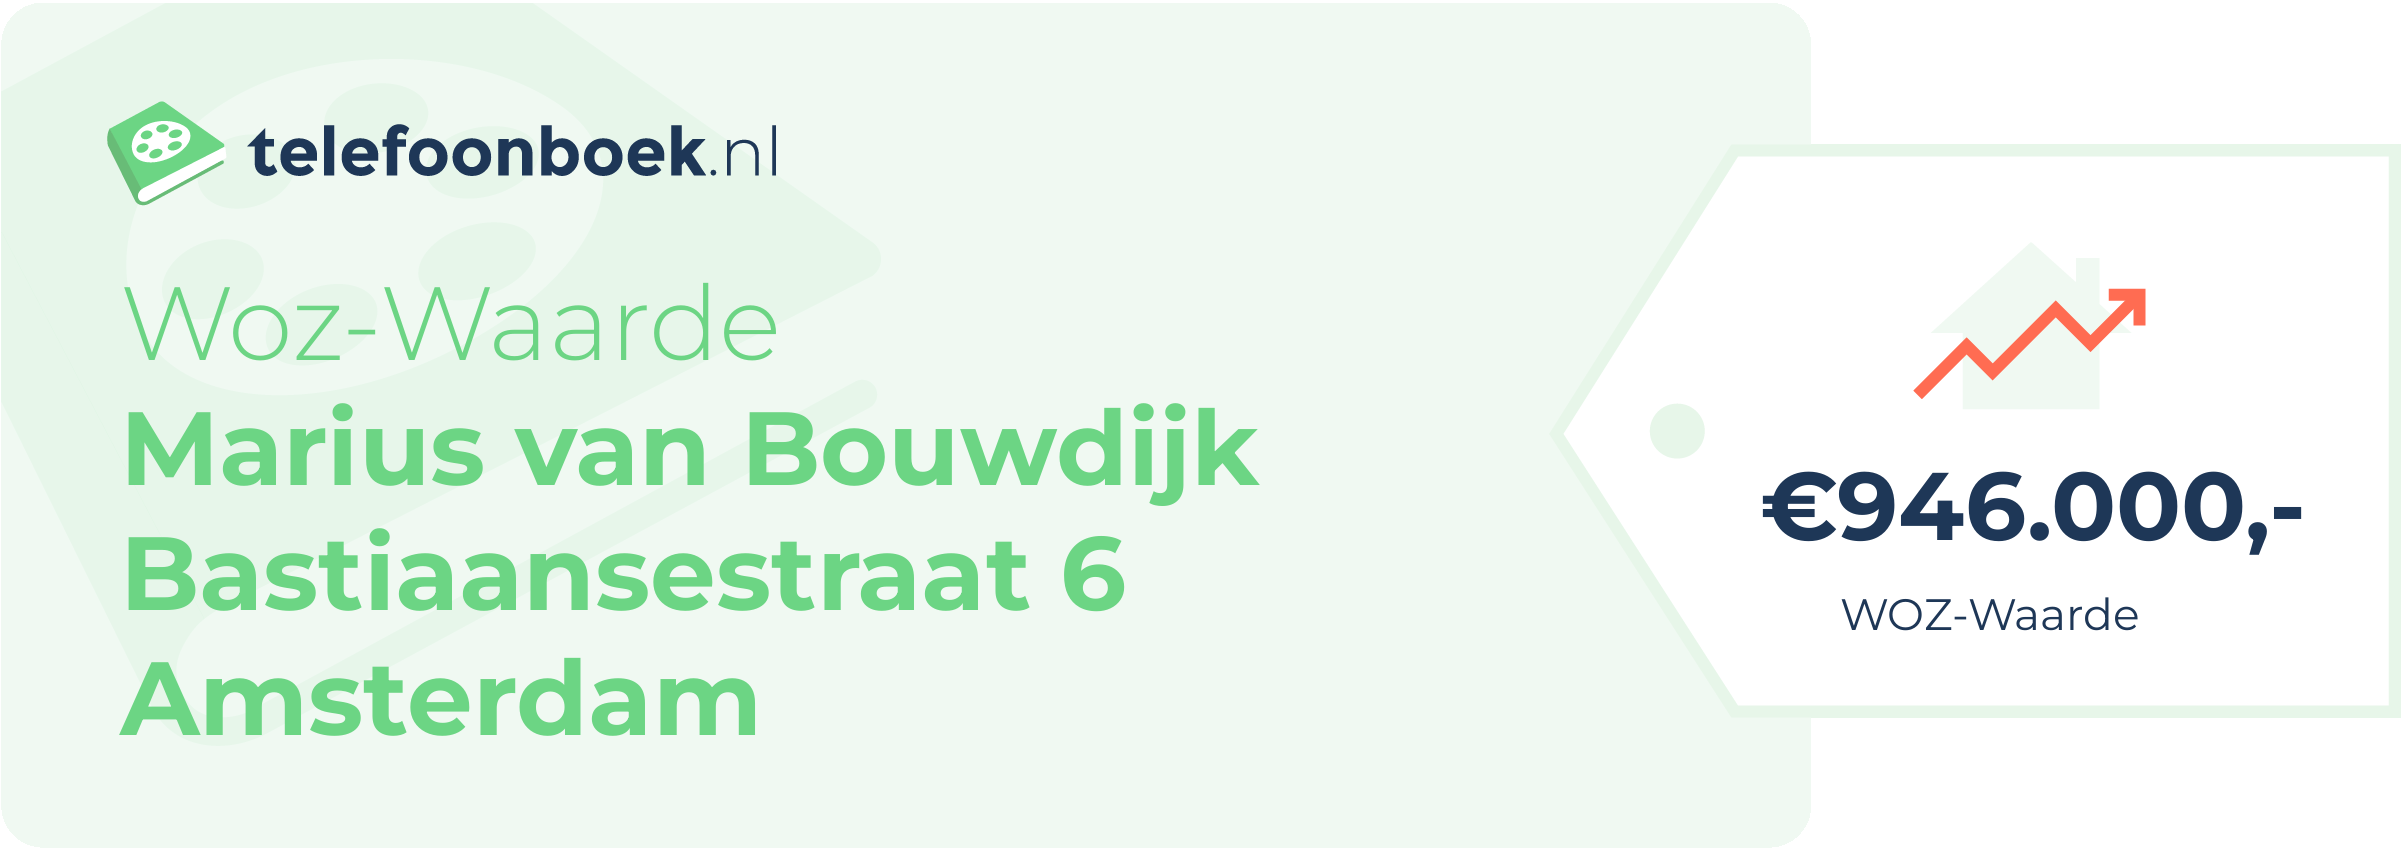 WOZ-waarde Marius Van Bouwdijk Bastiaansestraat 6 Amsterdam